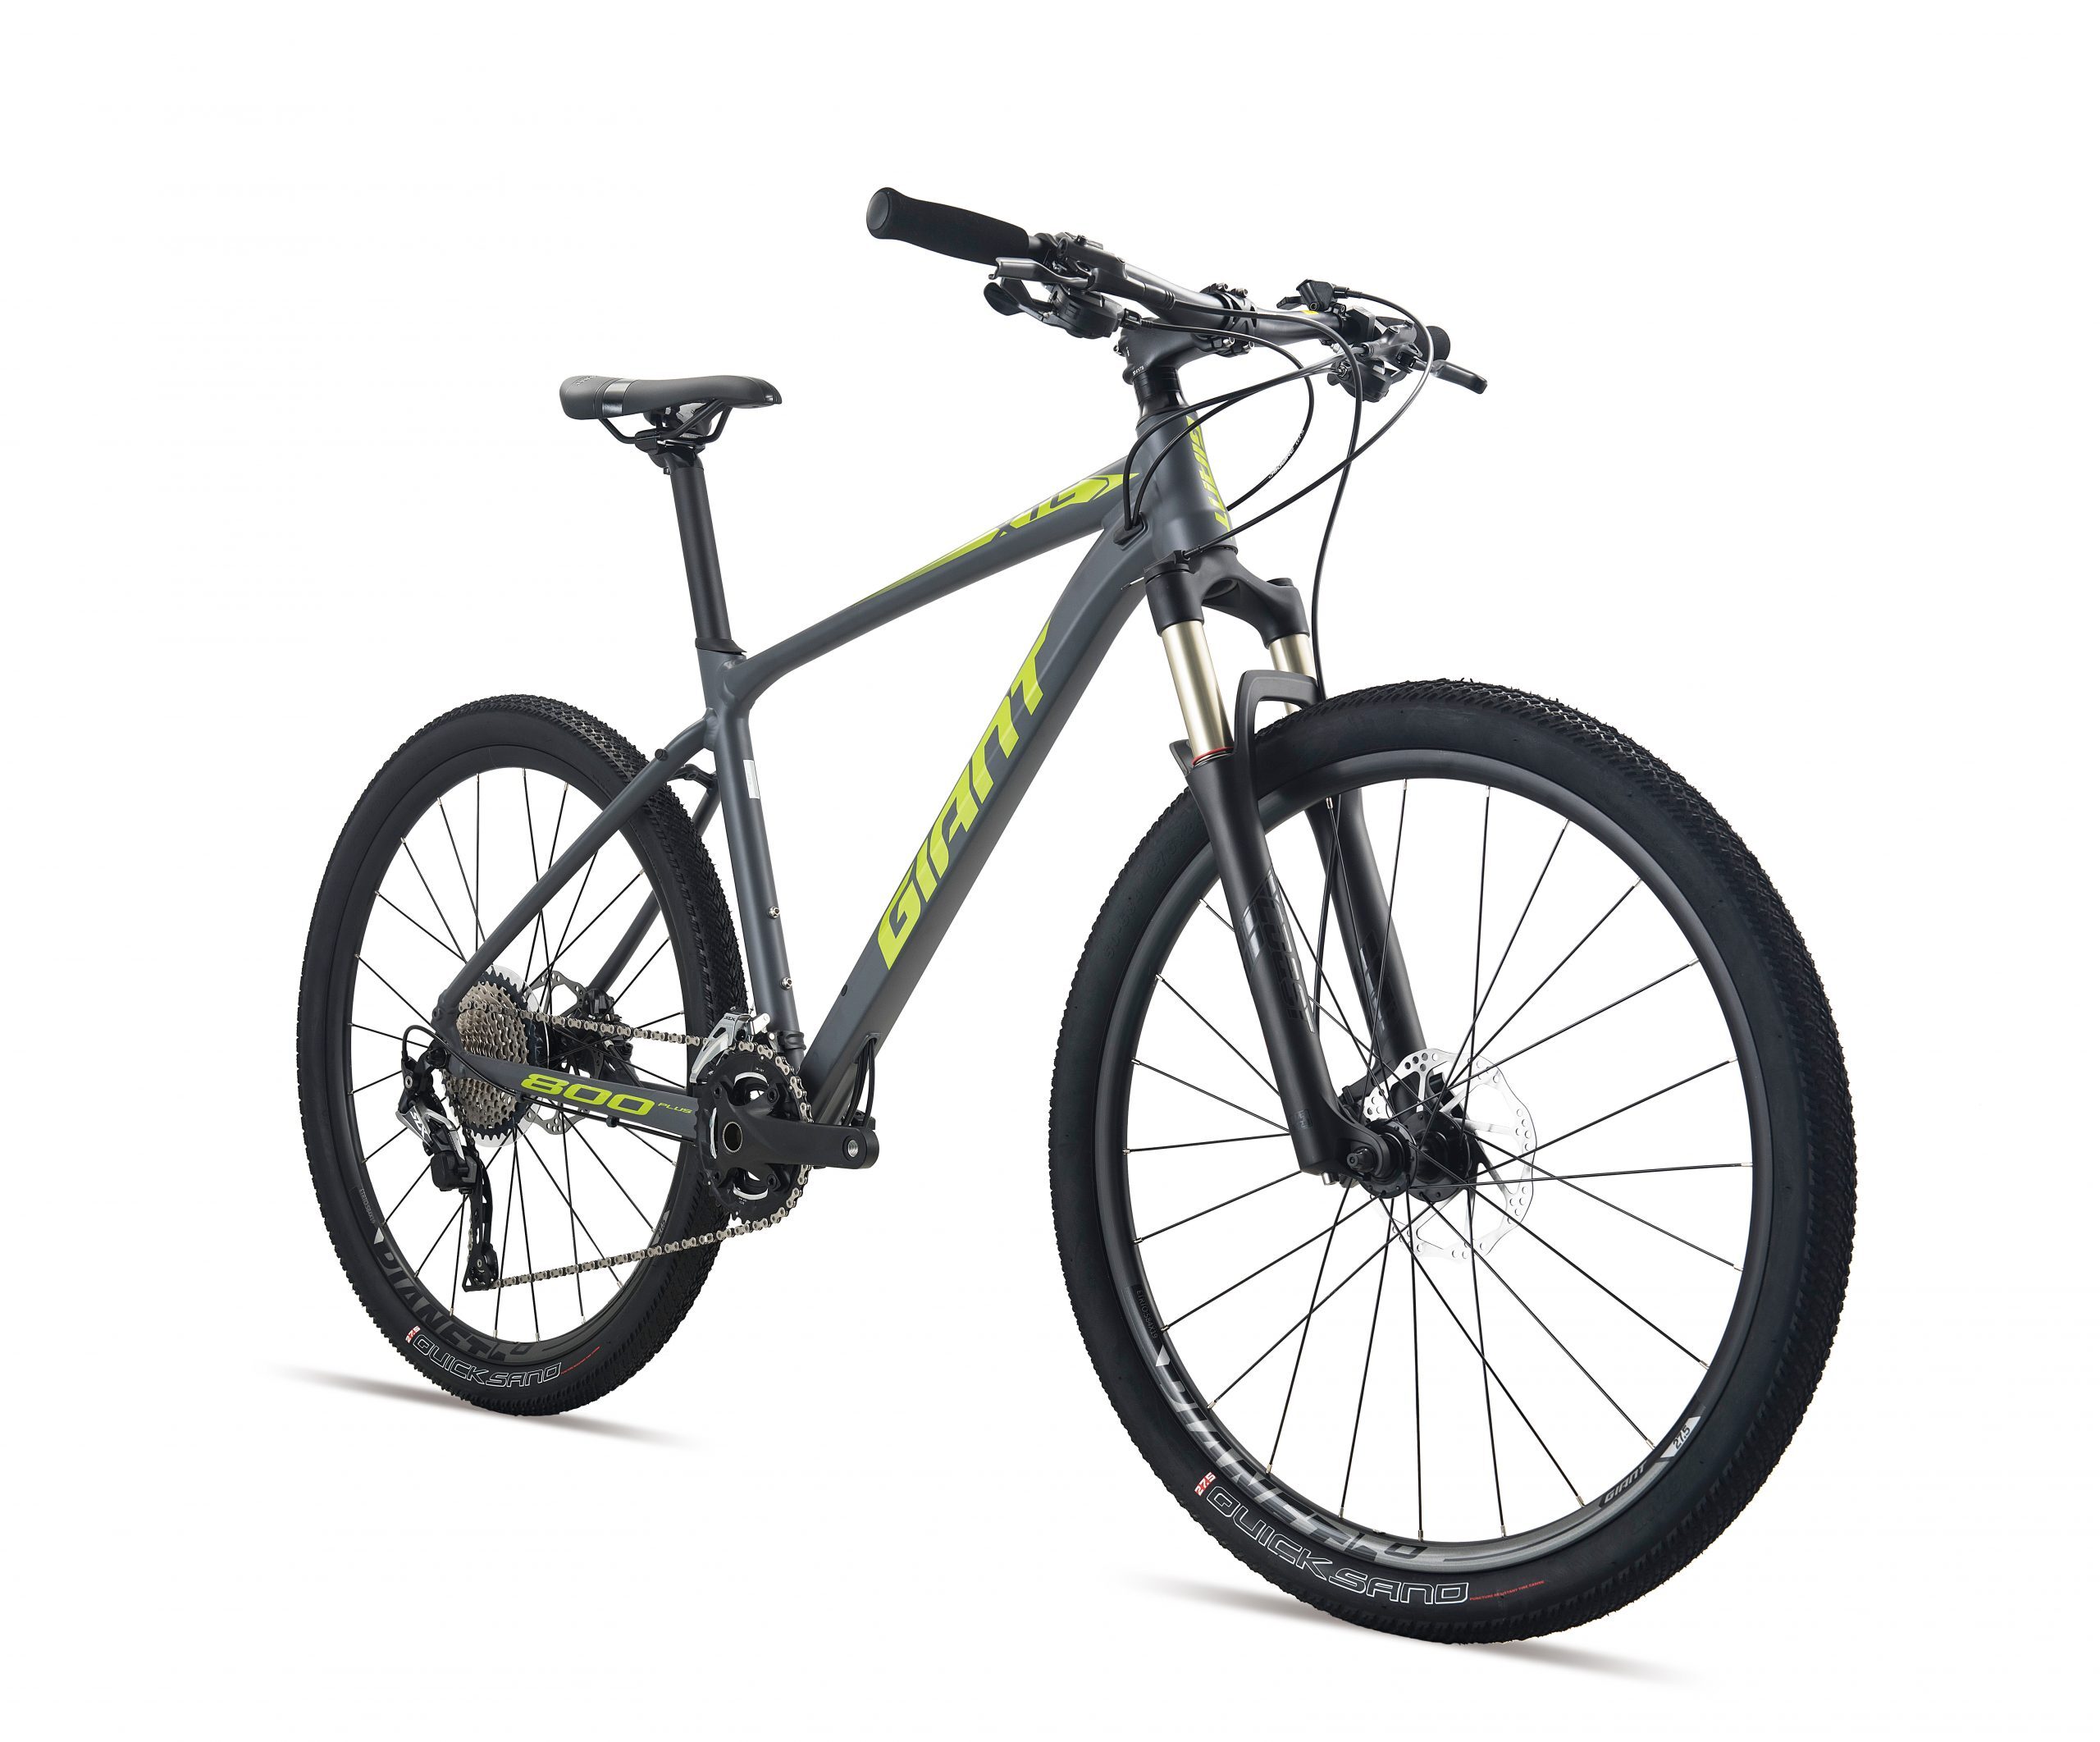 Xe đạp địa hình thể thao Giant XTC 800 PLUS 2021